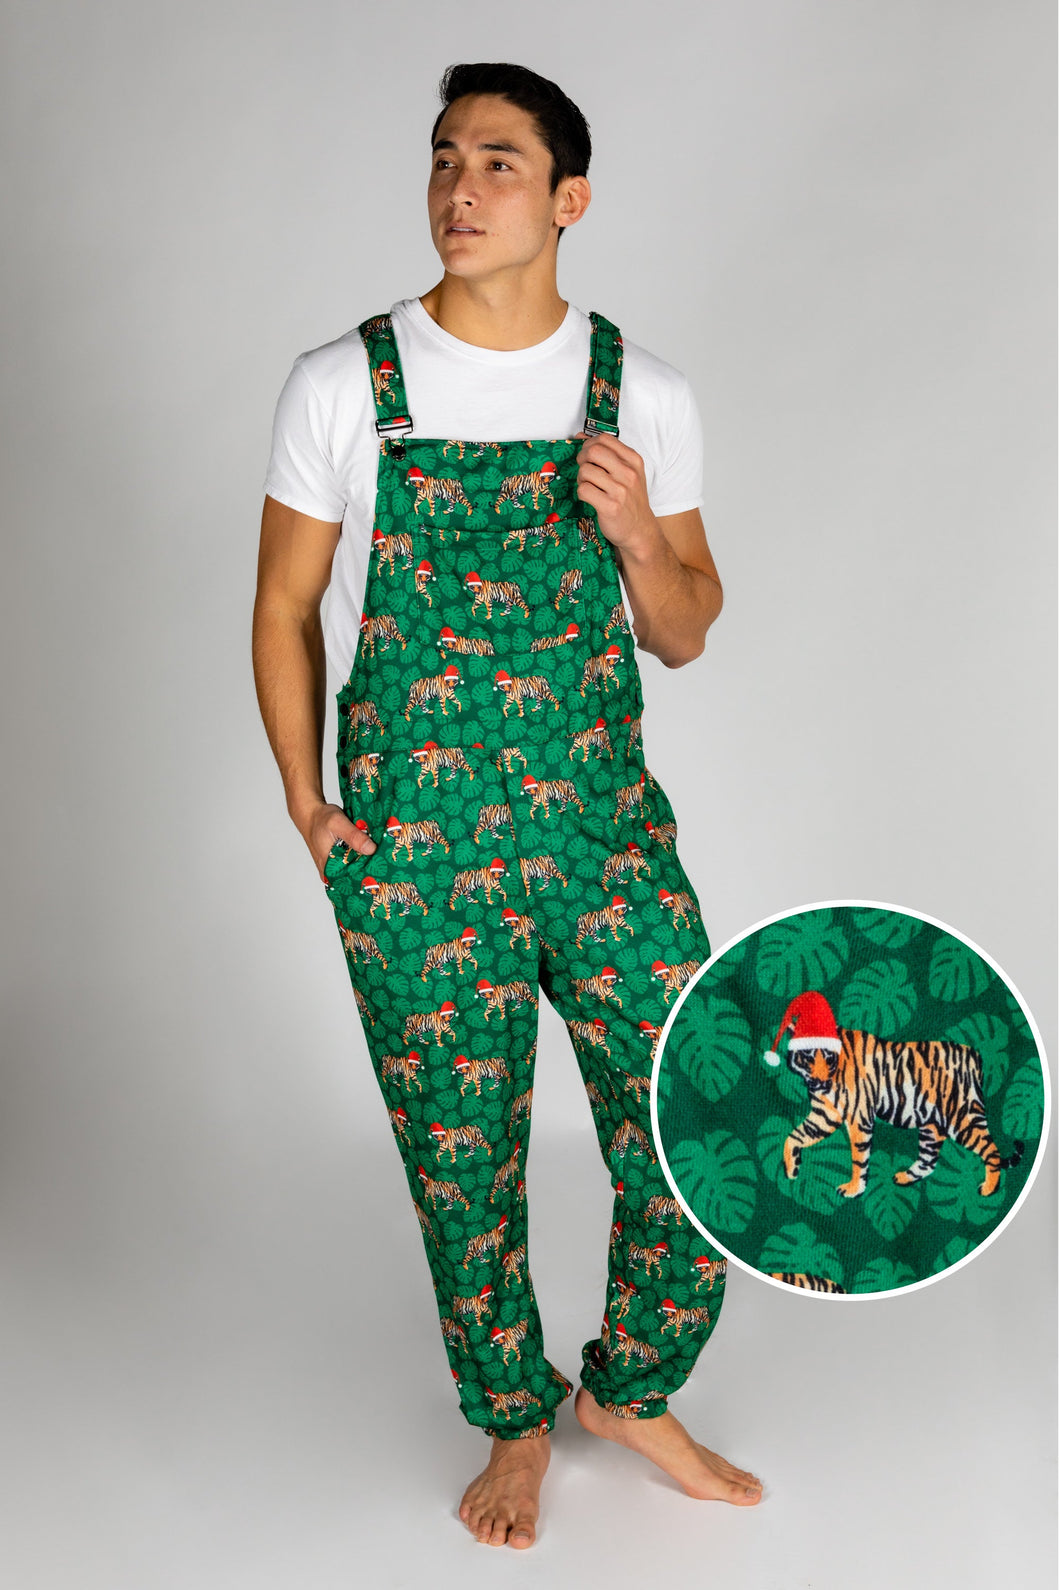 The Tinsel Tigers | Mens Christmas Pajamarall